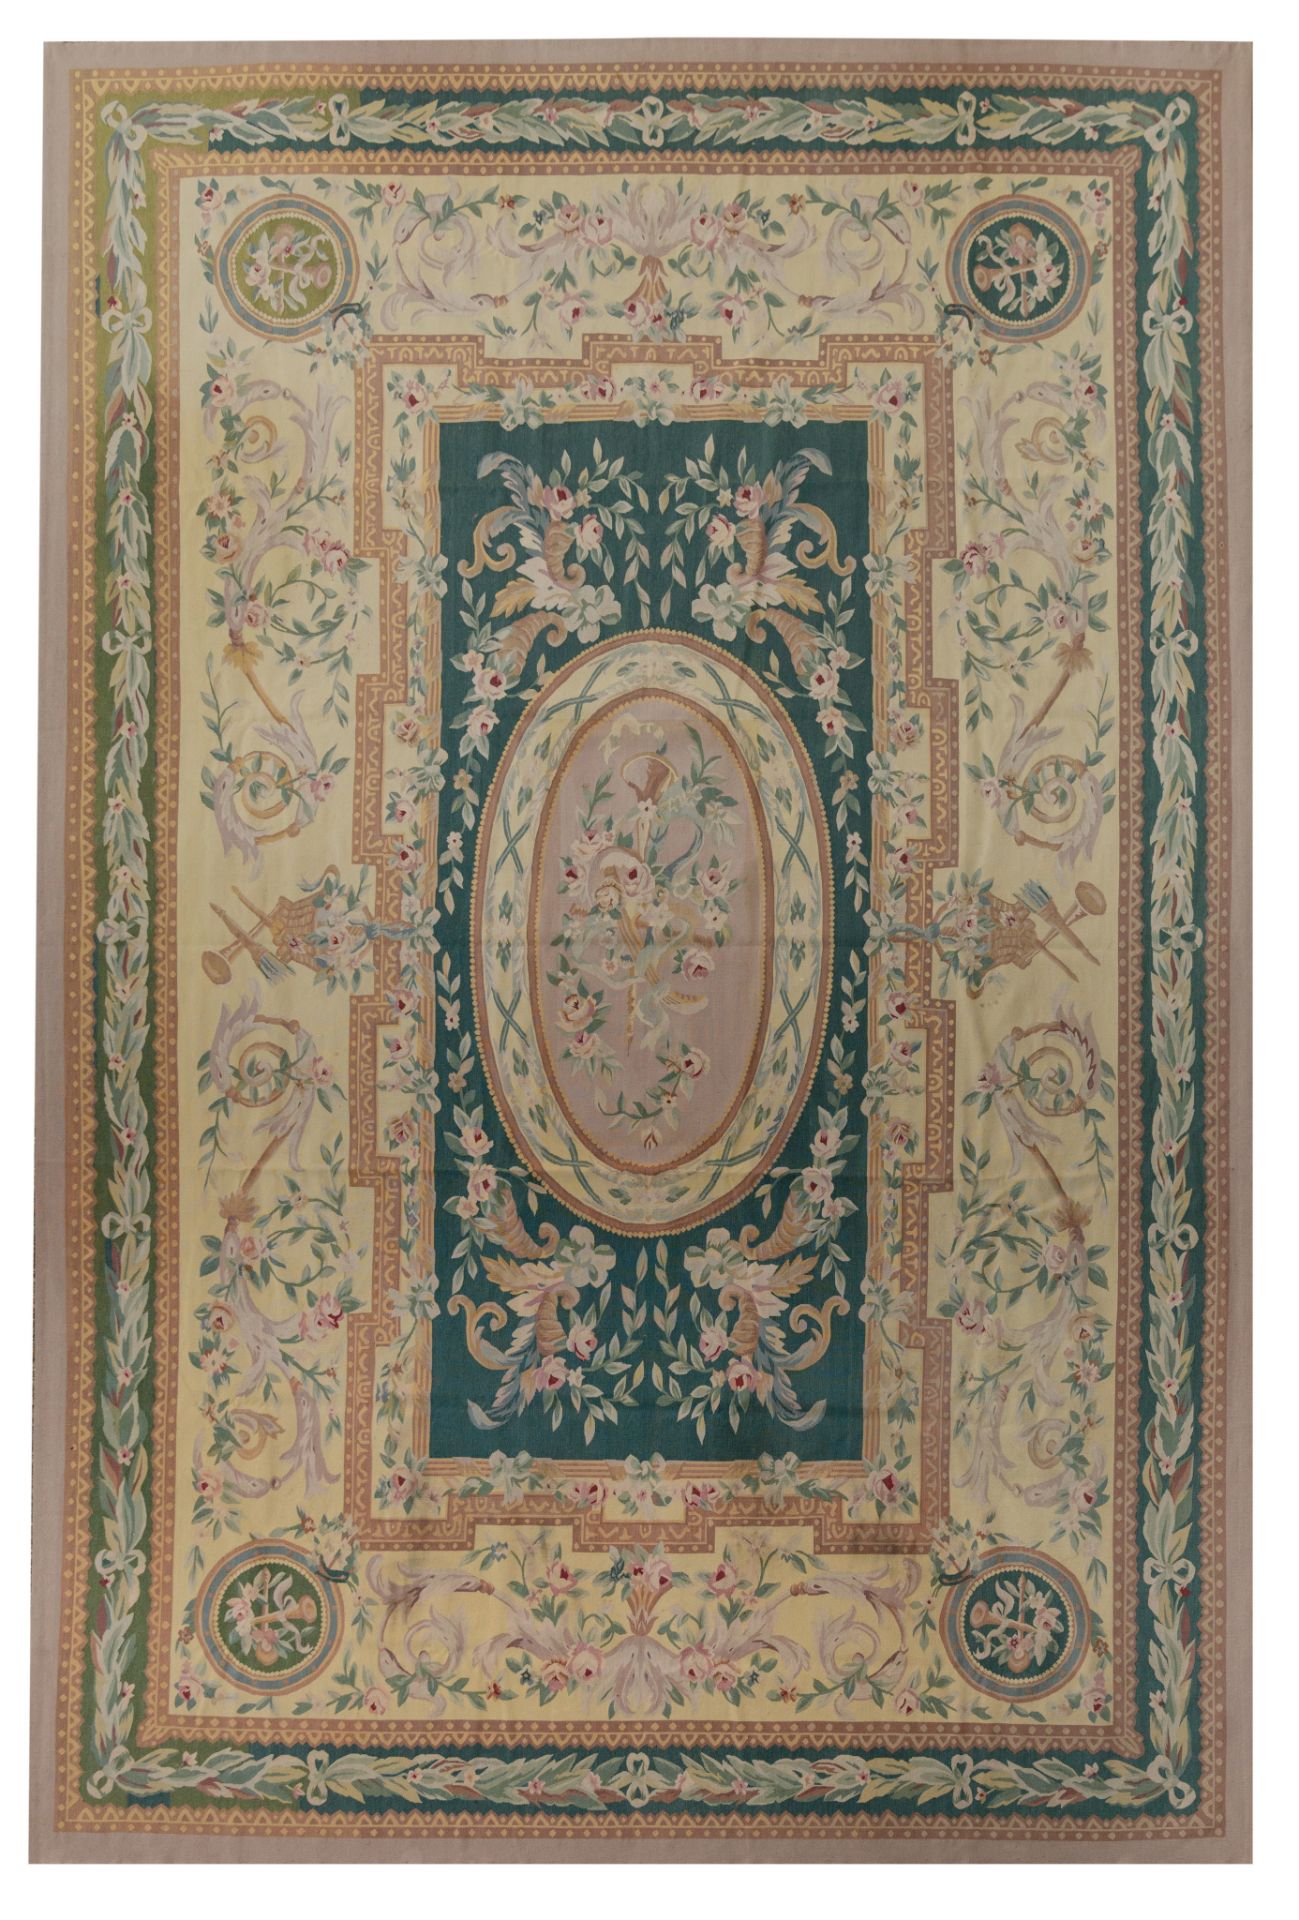 A large Aubusson rug, 553 x 370 cm